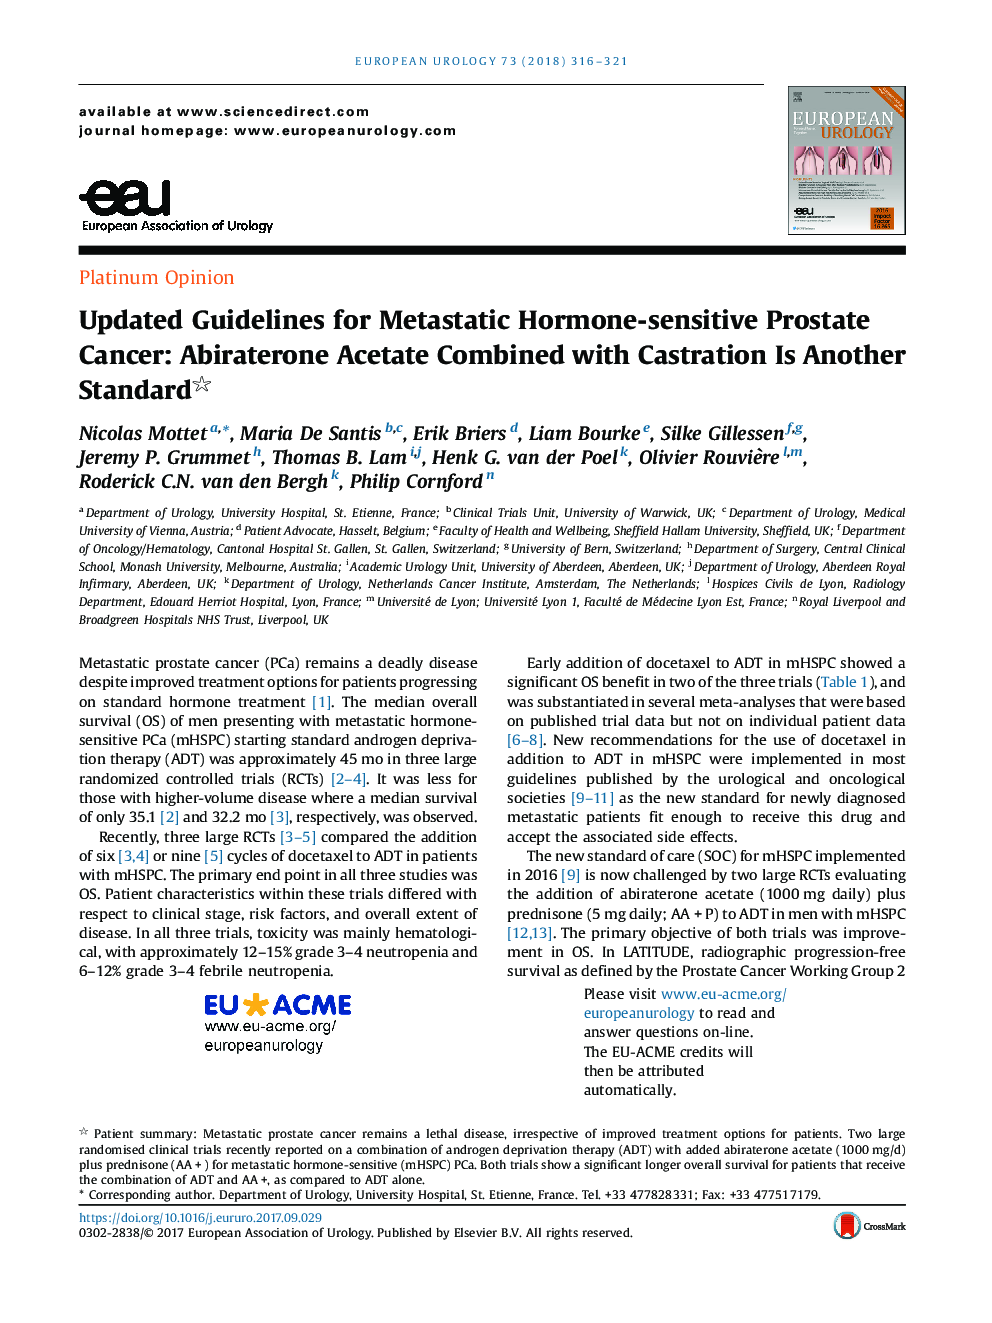 دستورالعمل های جدید برای سرطان پروستات حساسیت به هورمون متاستاتیک به روز شده: اسیابیت آبیراترون در ترکیب با کاستراسیون یک استاندارد دیگر است 